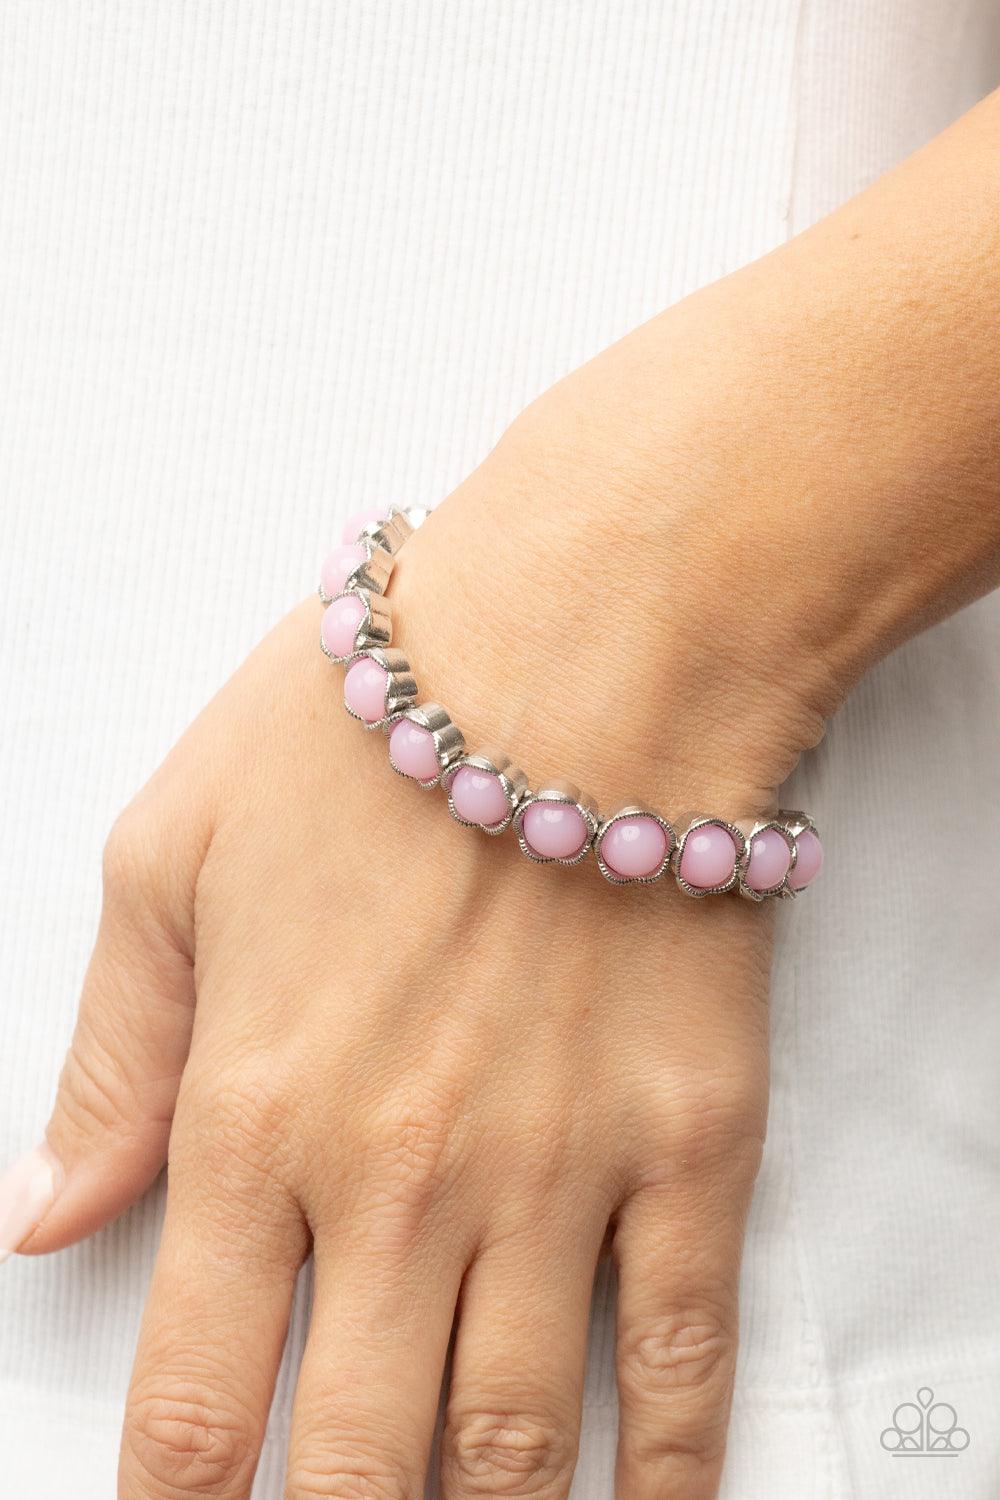 Lets be Buds Pink Bracelet - Jewelry by Bretta